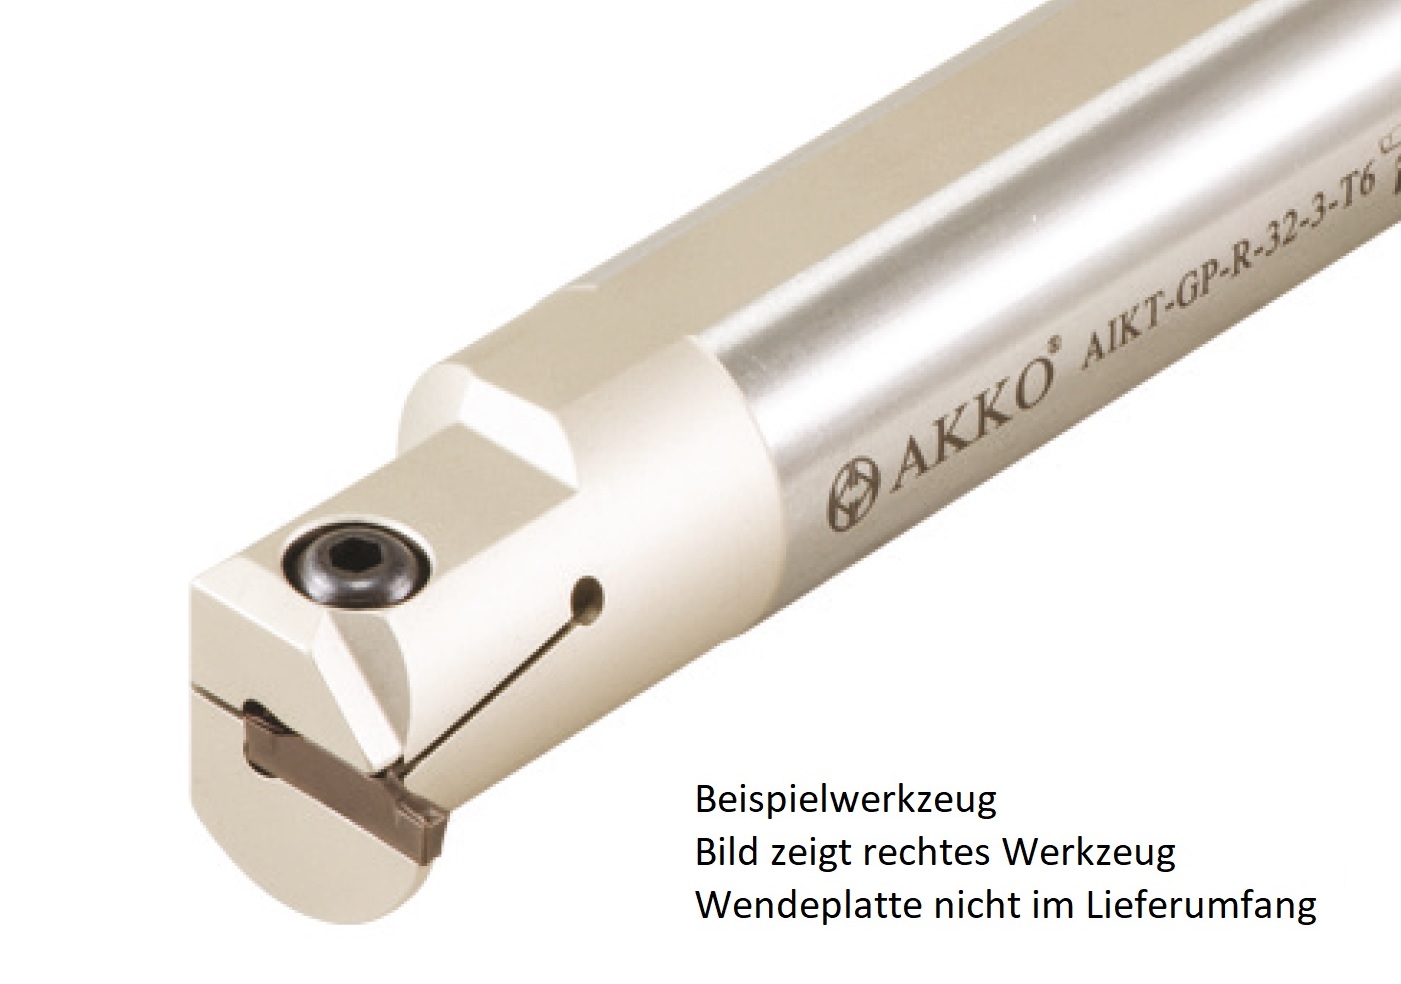 AKKO-Innen-Stechhalter, kompatibel mit Palbit-Stechplatte GP-2
Schaft-ø 20, ohne Innenkühlung, rechts